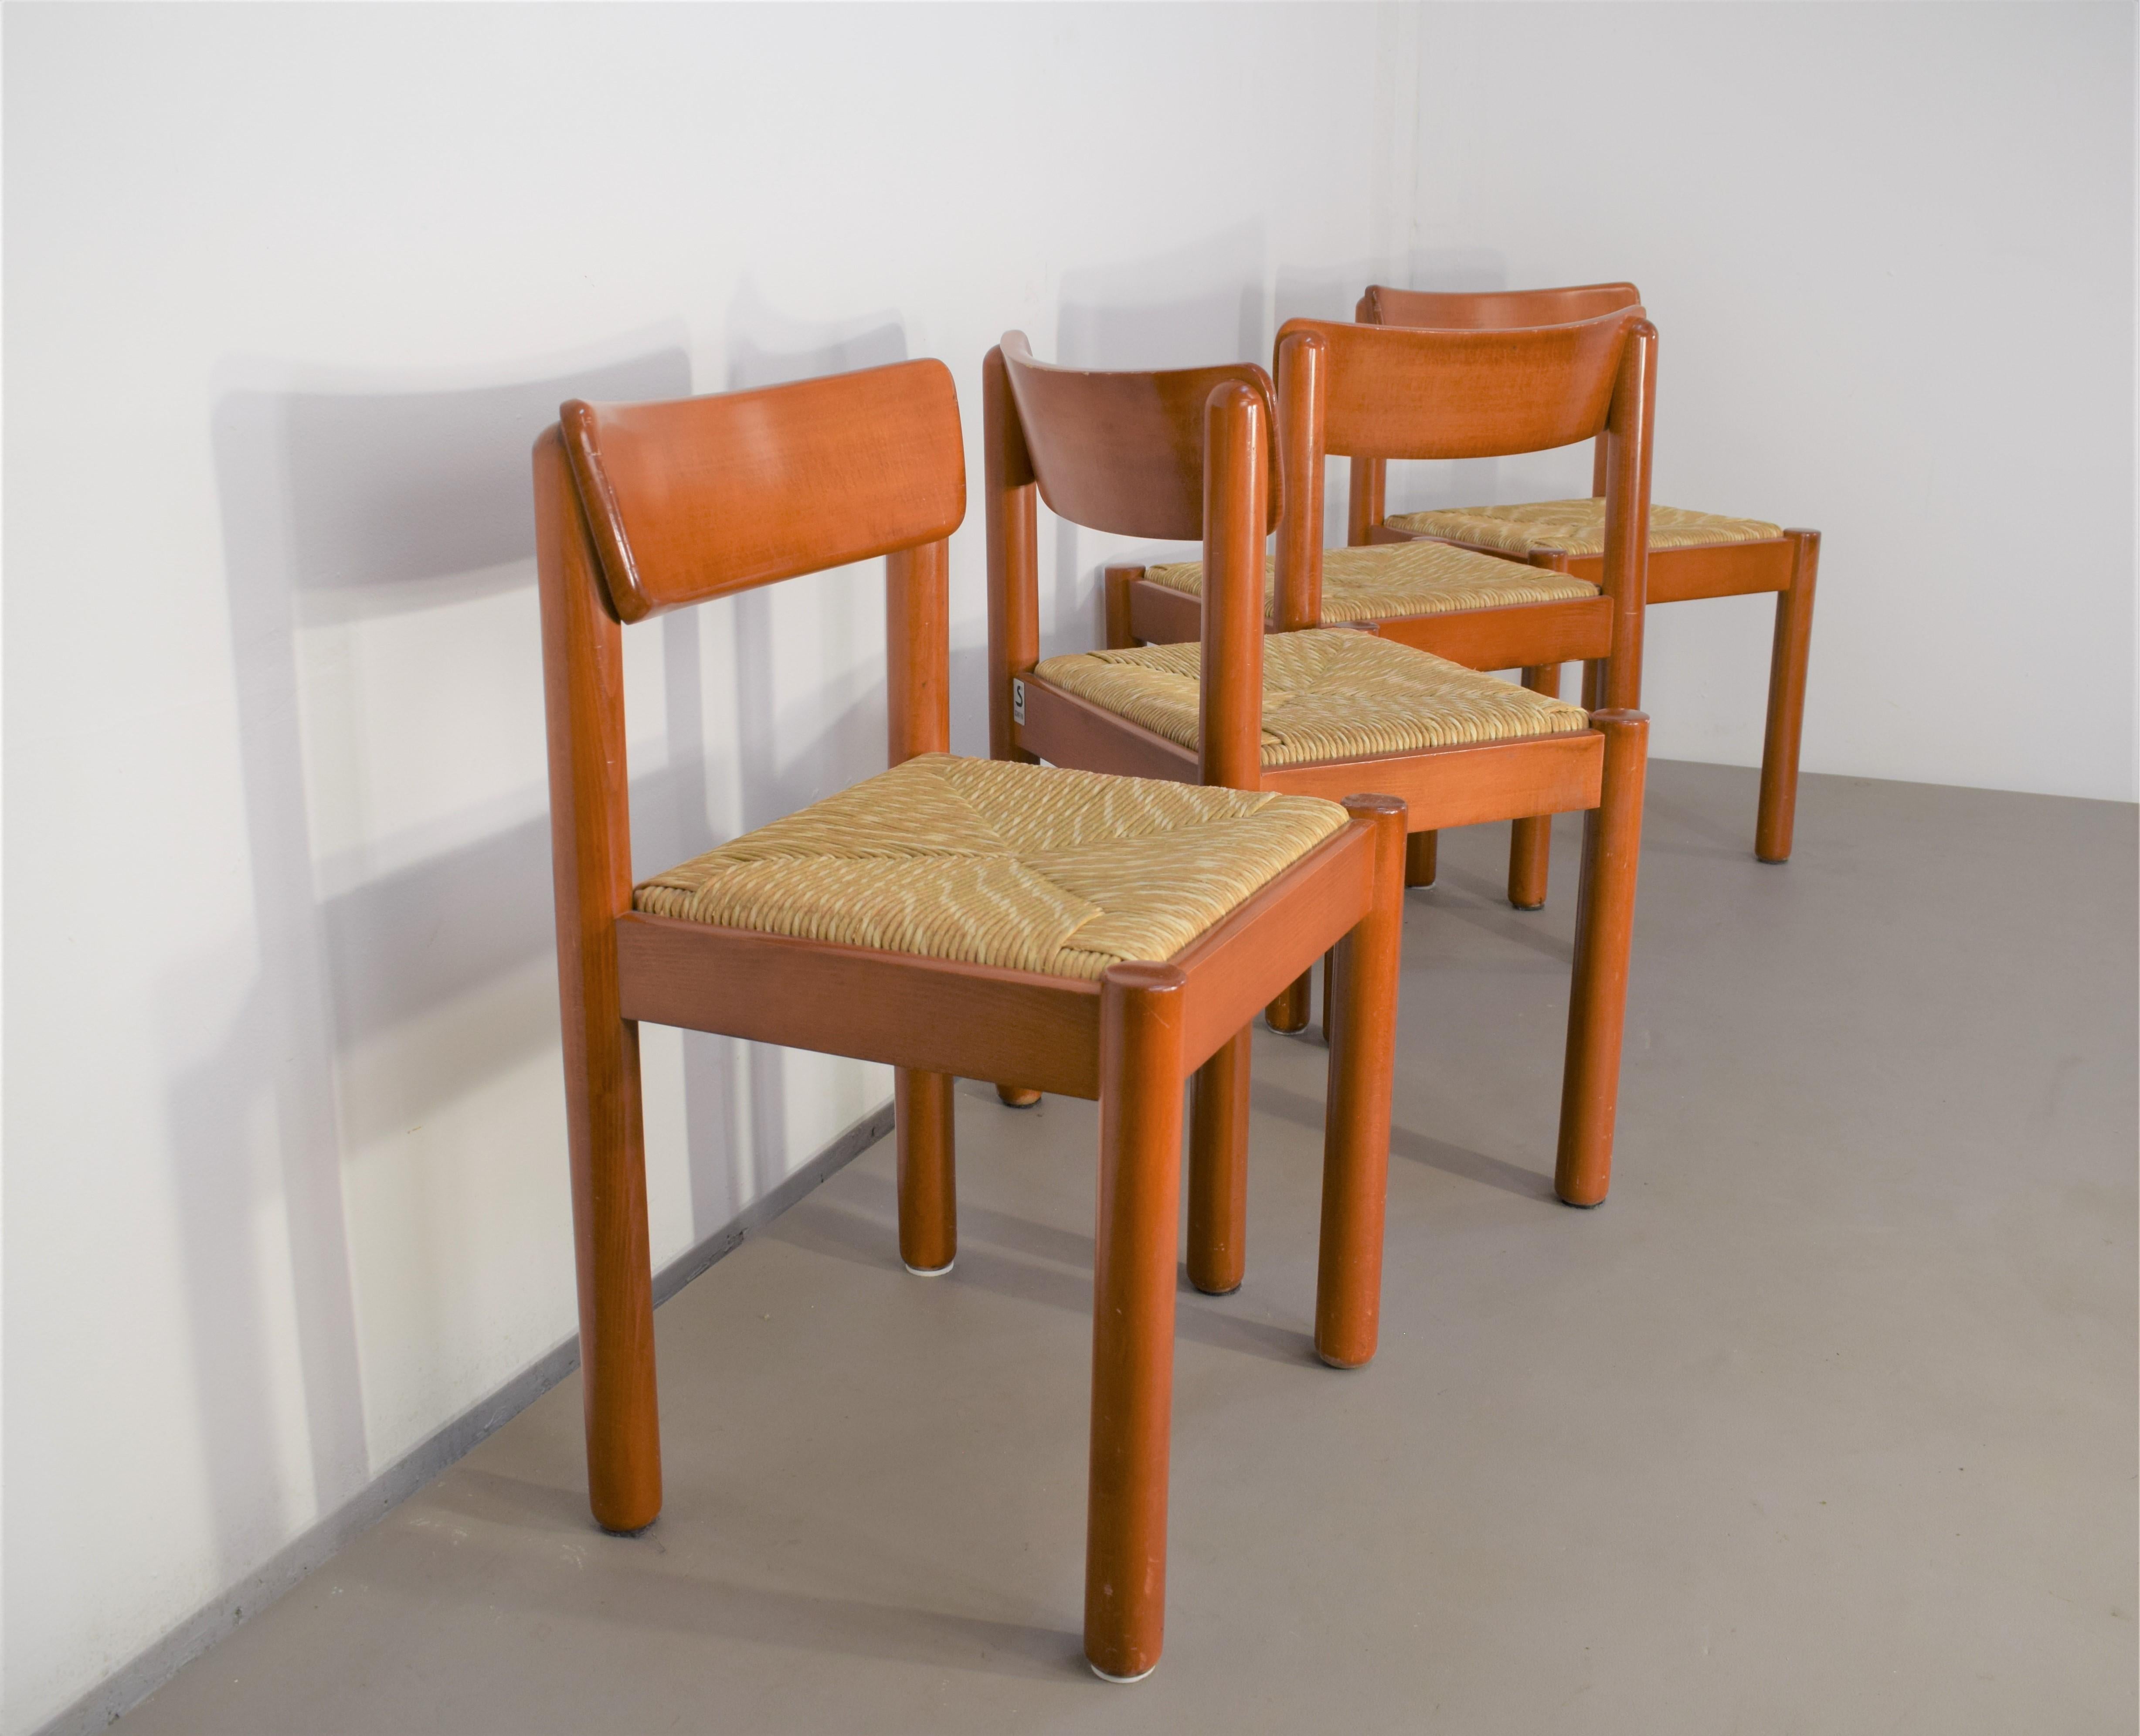 Ensemble de 4 chaises par Vico Magistretti pour Schiffini, 1960.
Dimensions : H= 76 cm ; L= 49 cm ; P= 46 cm ; assise H= 45 cm : H= 76 cm ; L= 49 cm ; P= 46 cm ; assise H= 45 cm.